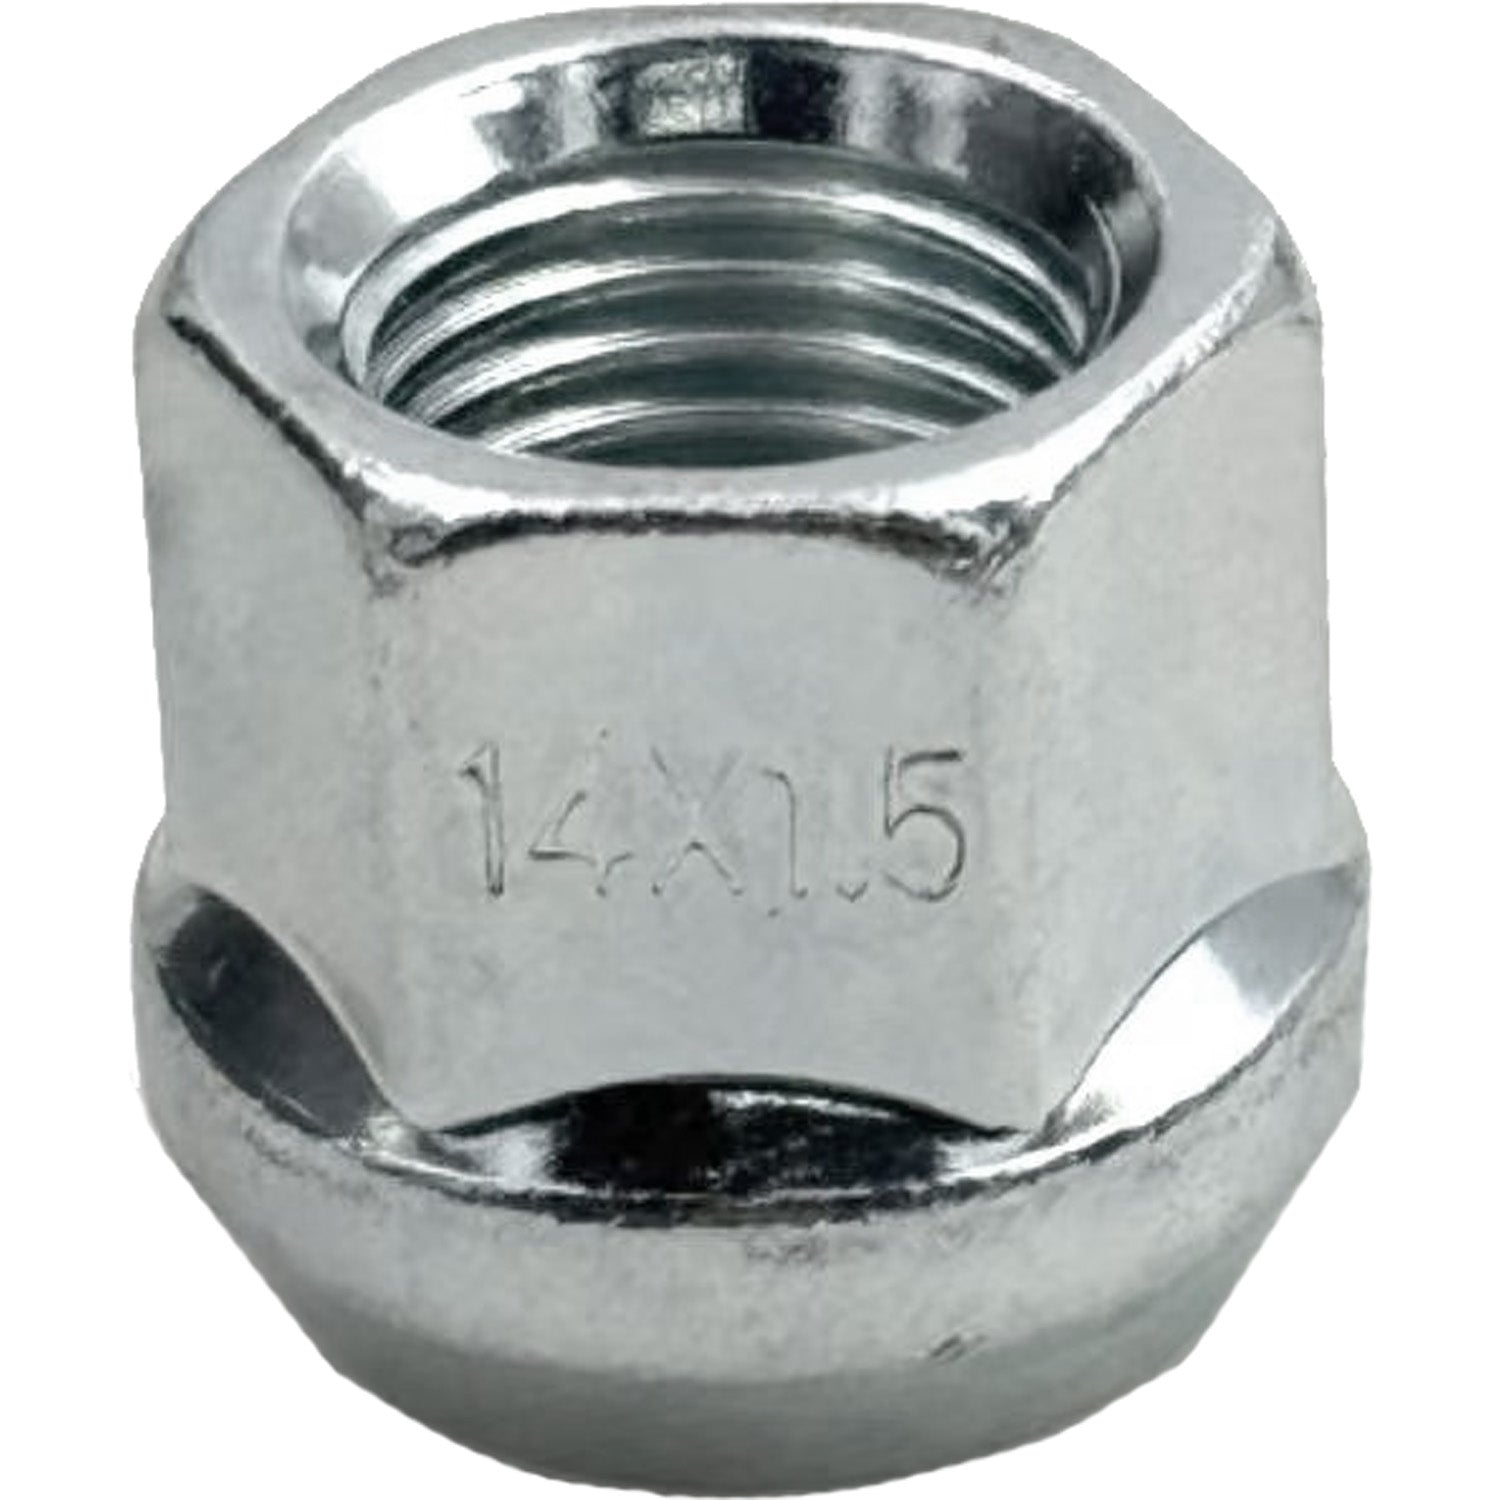 Ascot LN-29 M14 x 1.50" Open End Bulge Acorn Zinc Lug Nut 3/4" Hex